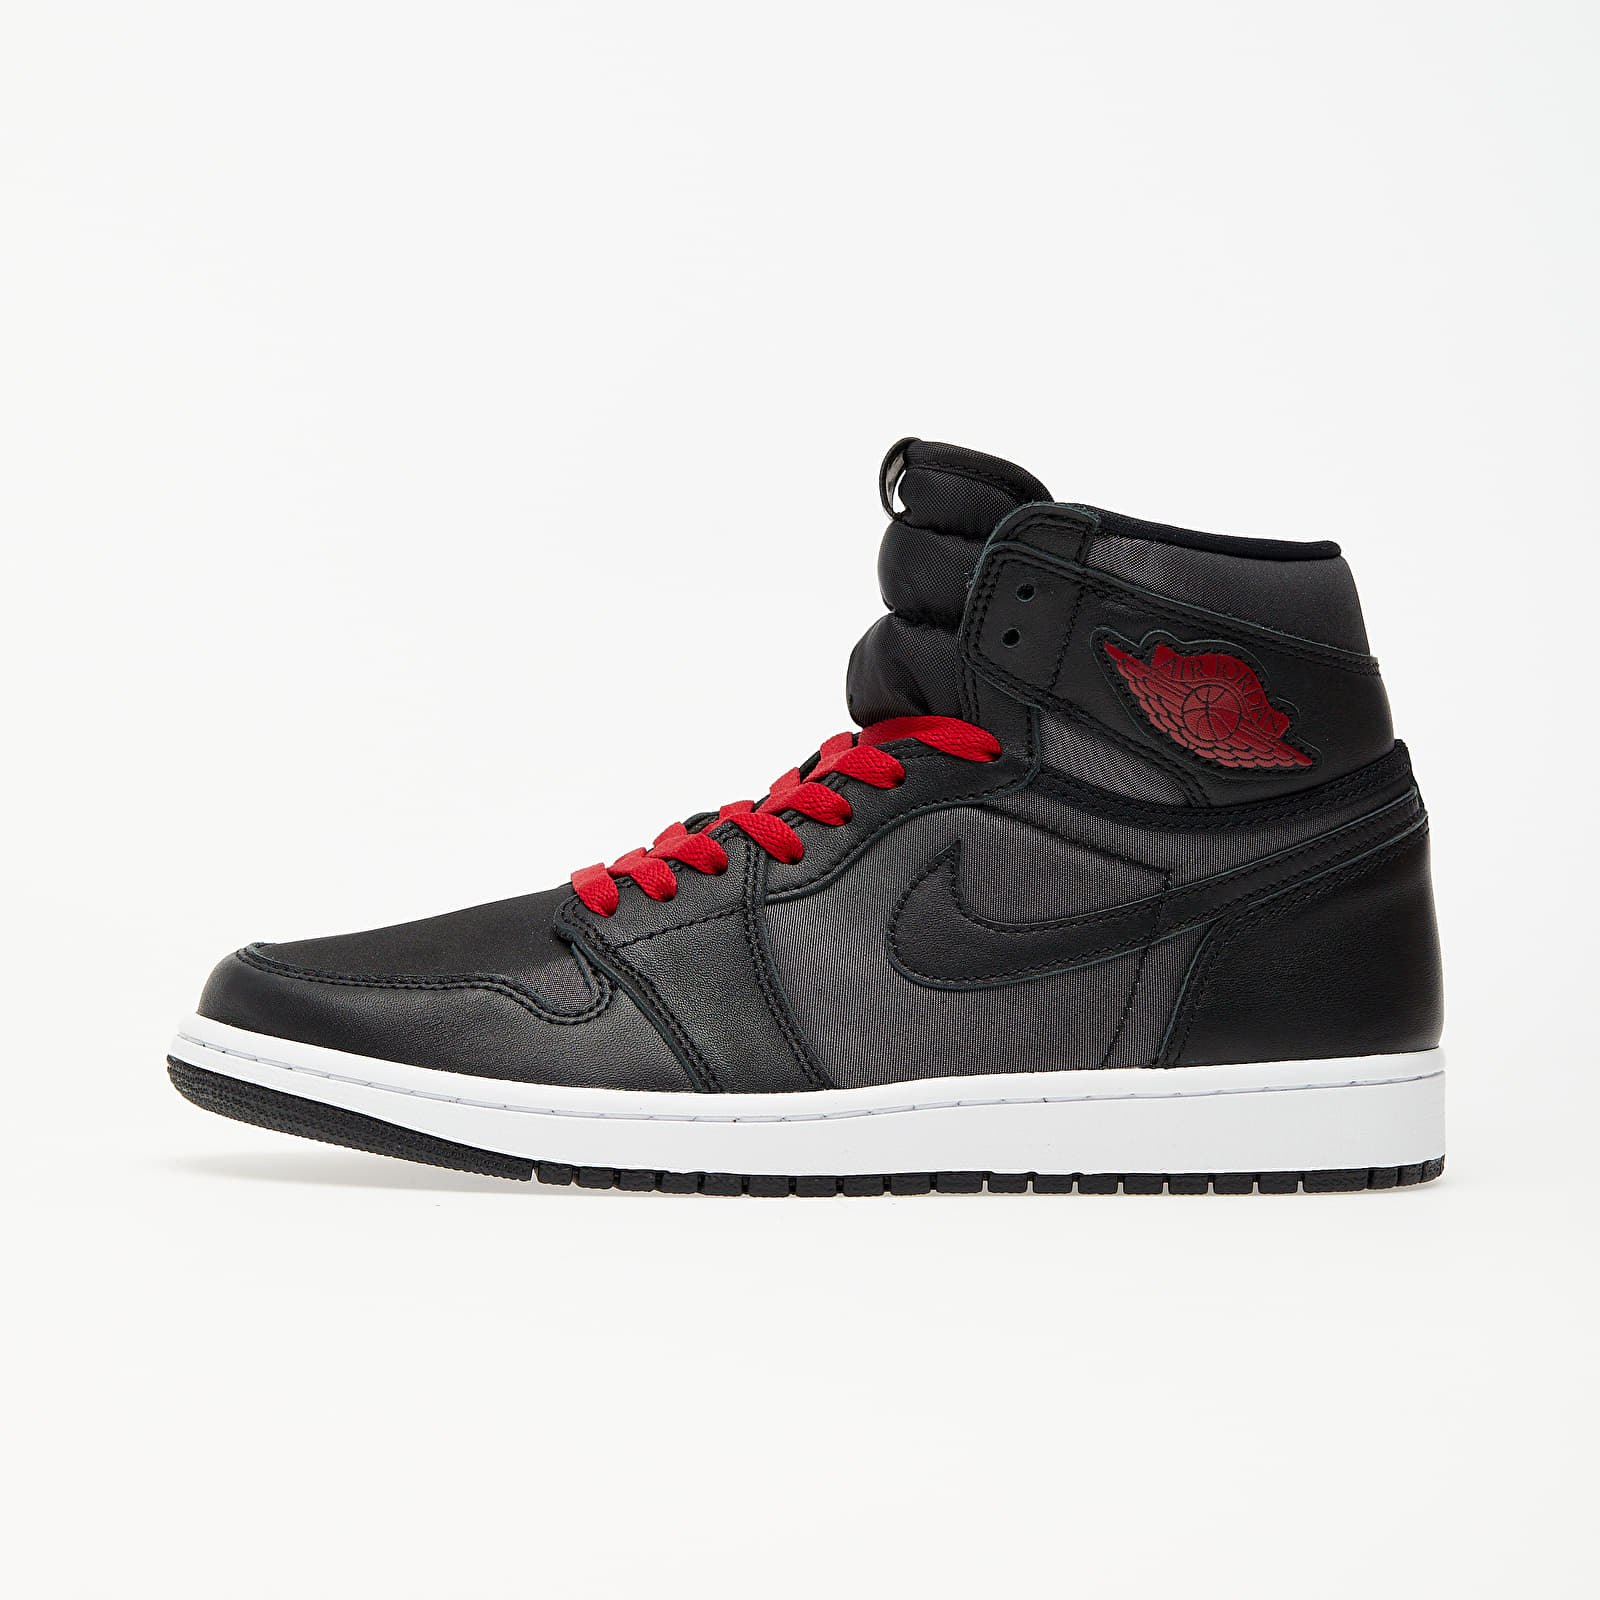 Herren Sneaker und Schuhe Air Jordan 1 Retro High OG Black/ Gym Red-Black-White